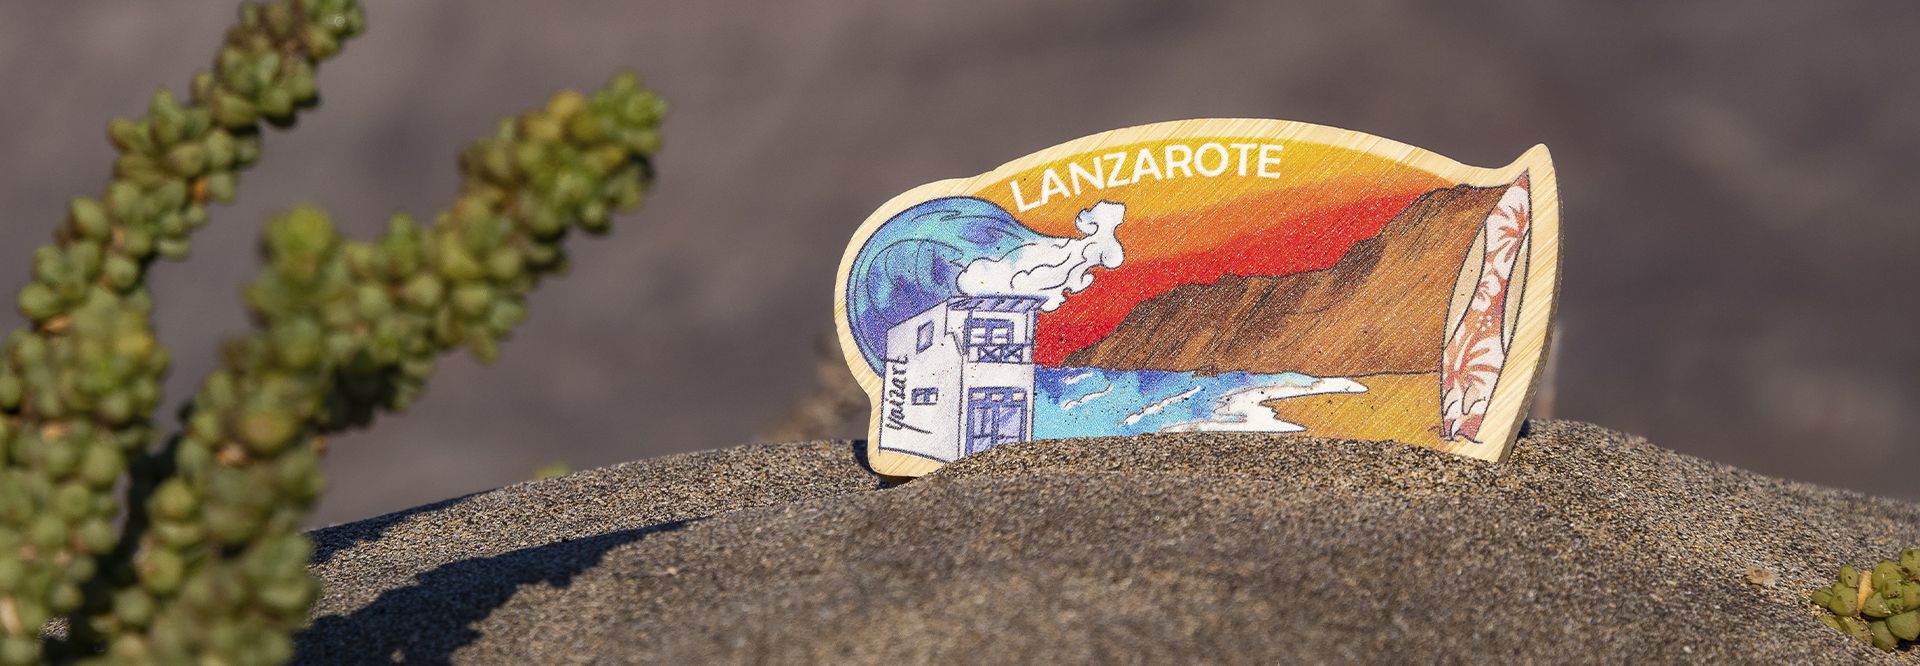 Descubre Famara. Guía de planazos y turismo de Lanzarote.